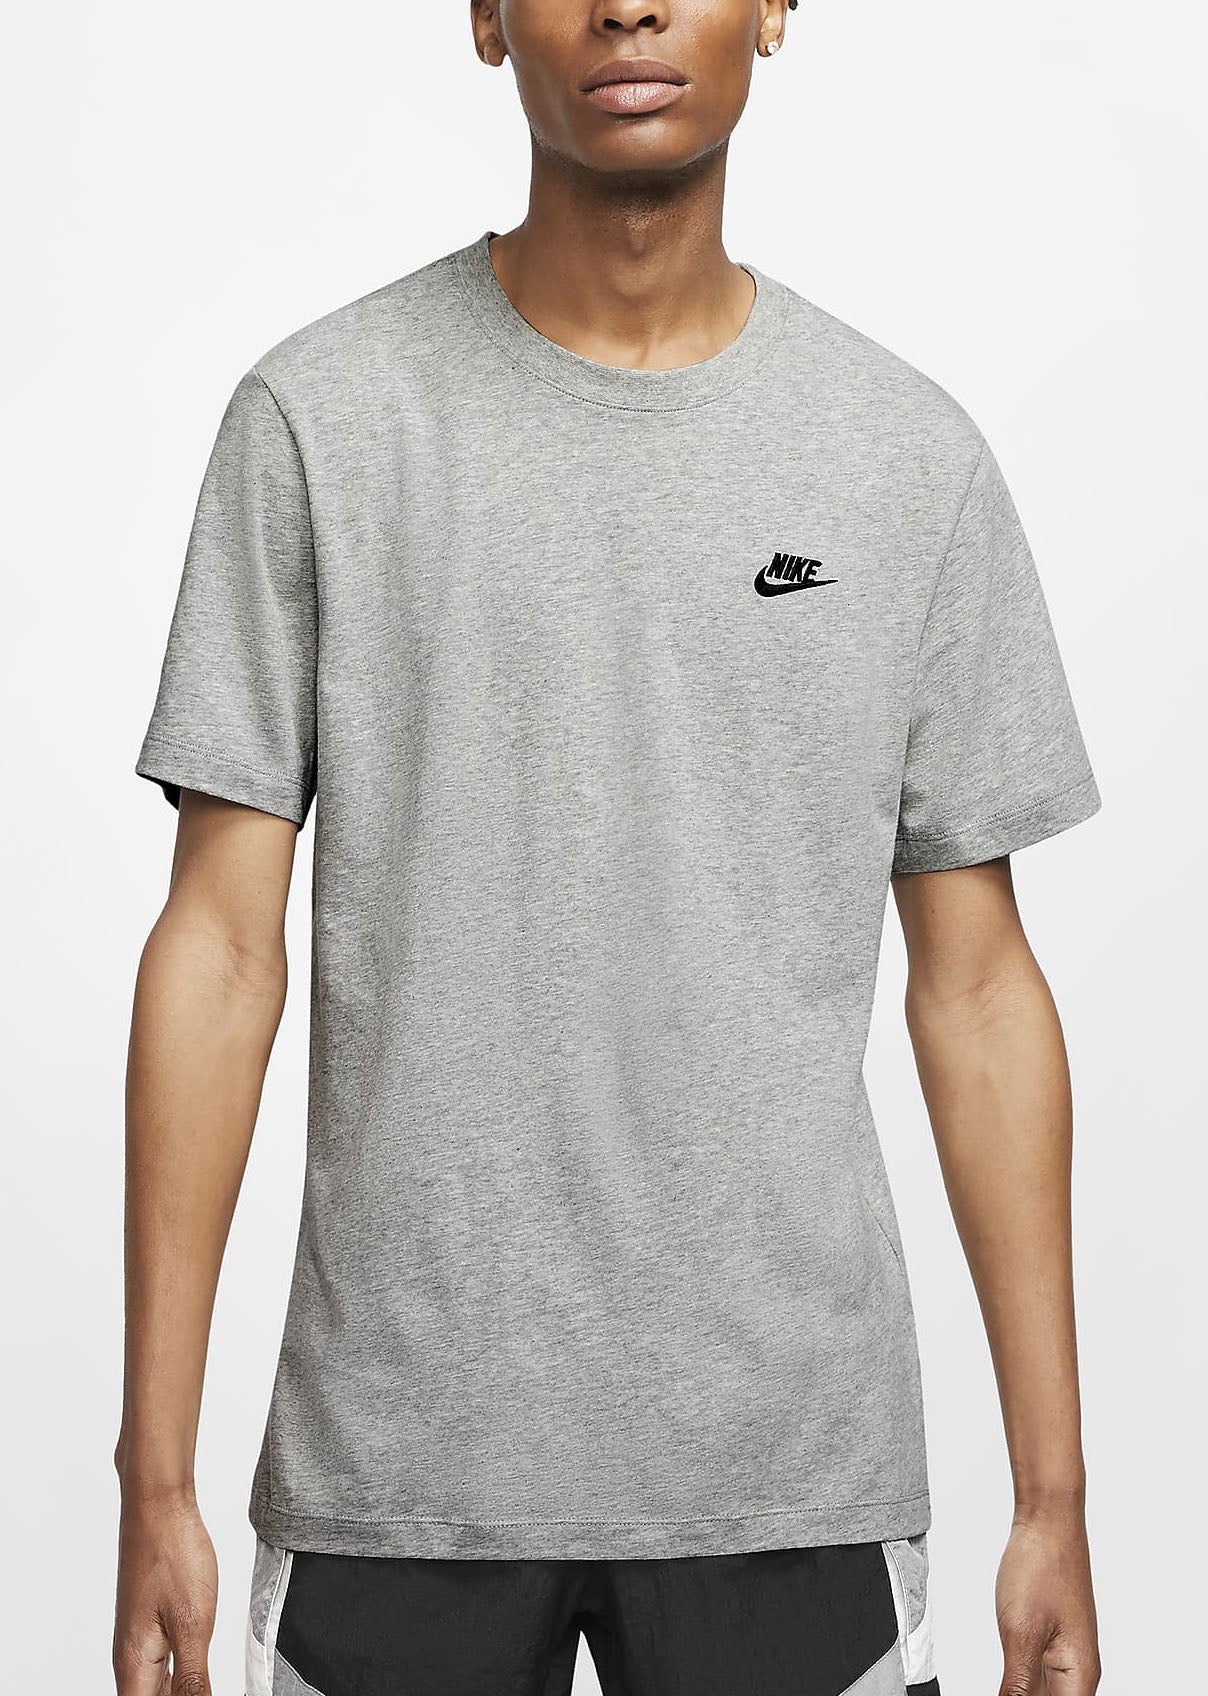 Nike Mens Sportswear Club Tee - (AR4997 064) - TS9 - C1